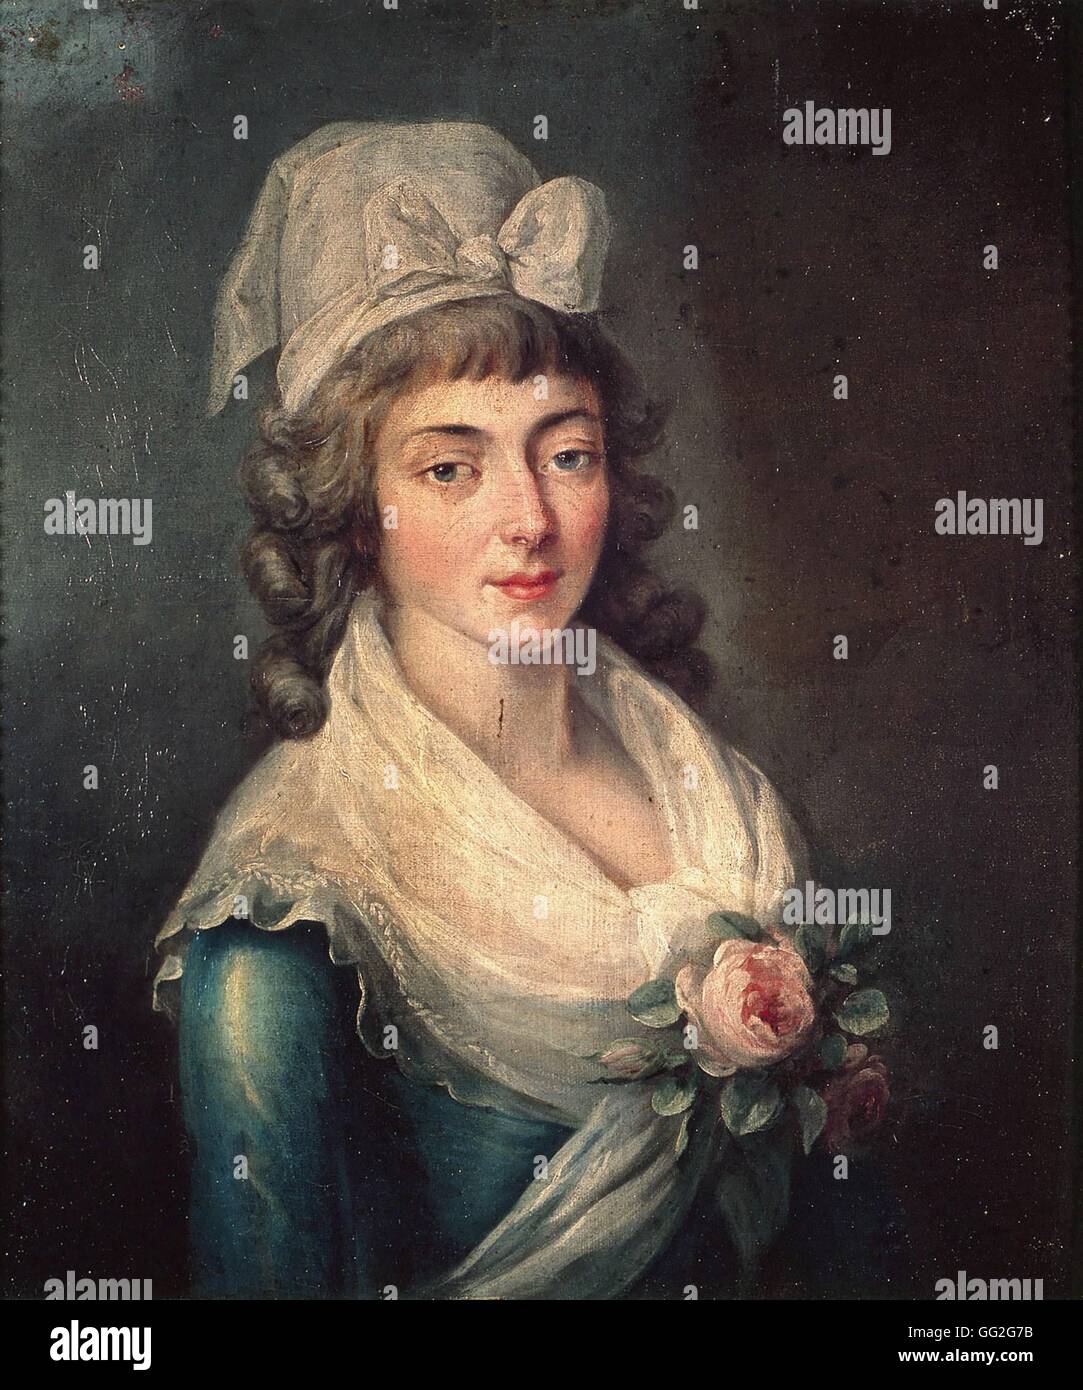 Anonyme Portrait de Manon Roland de la platière connue sous le nom de Madame Roland c.1790 Huile sur toile Versailles, Musée Lambinet Banque D'Images